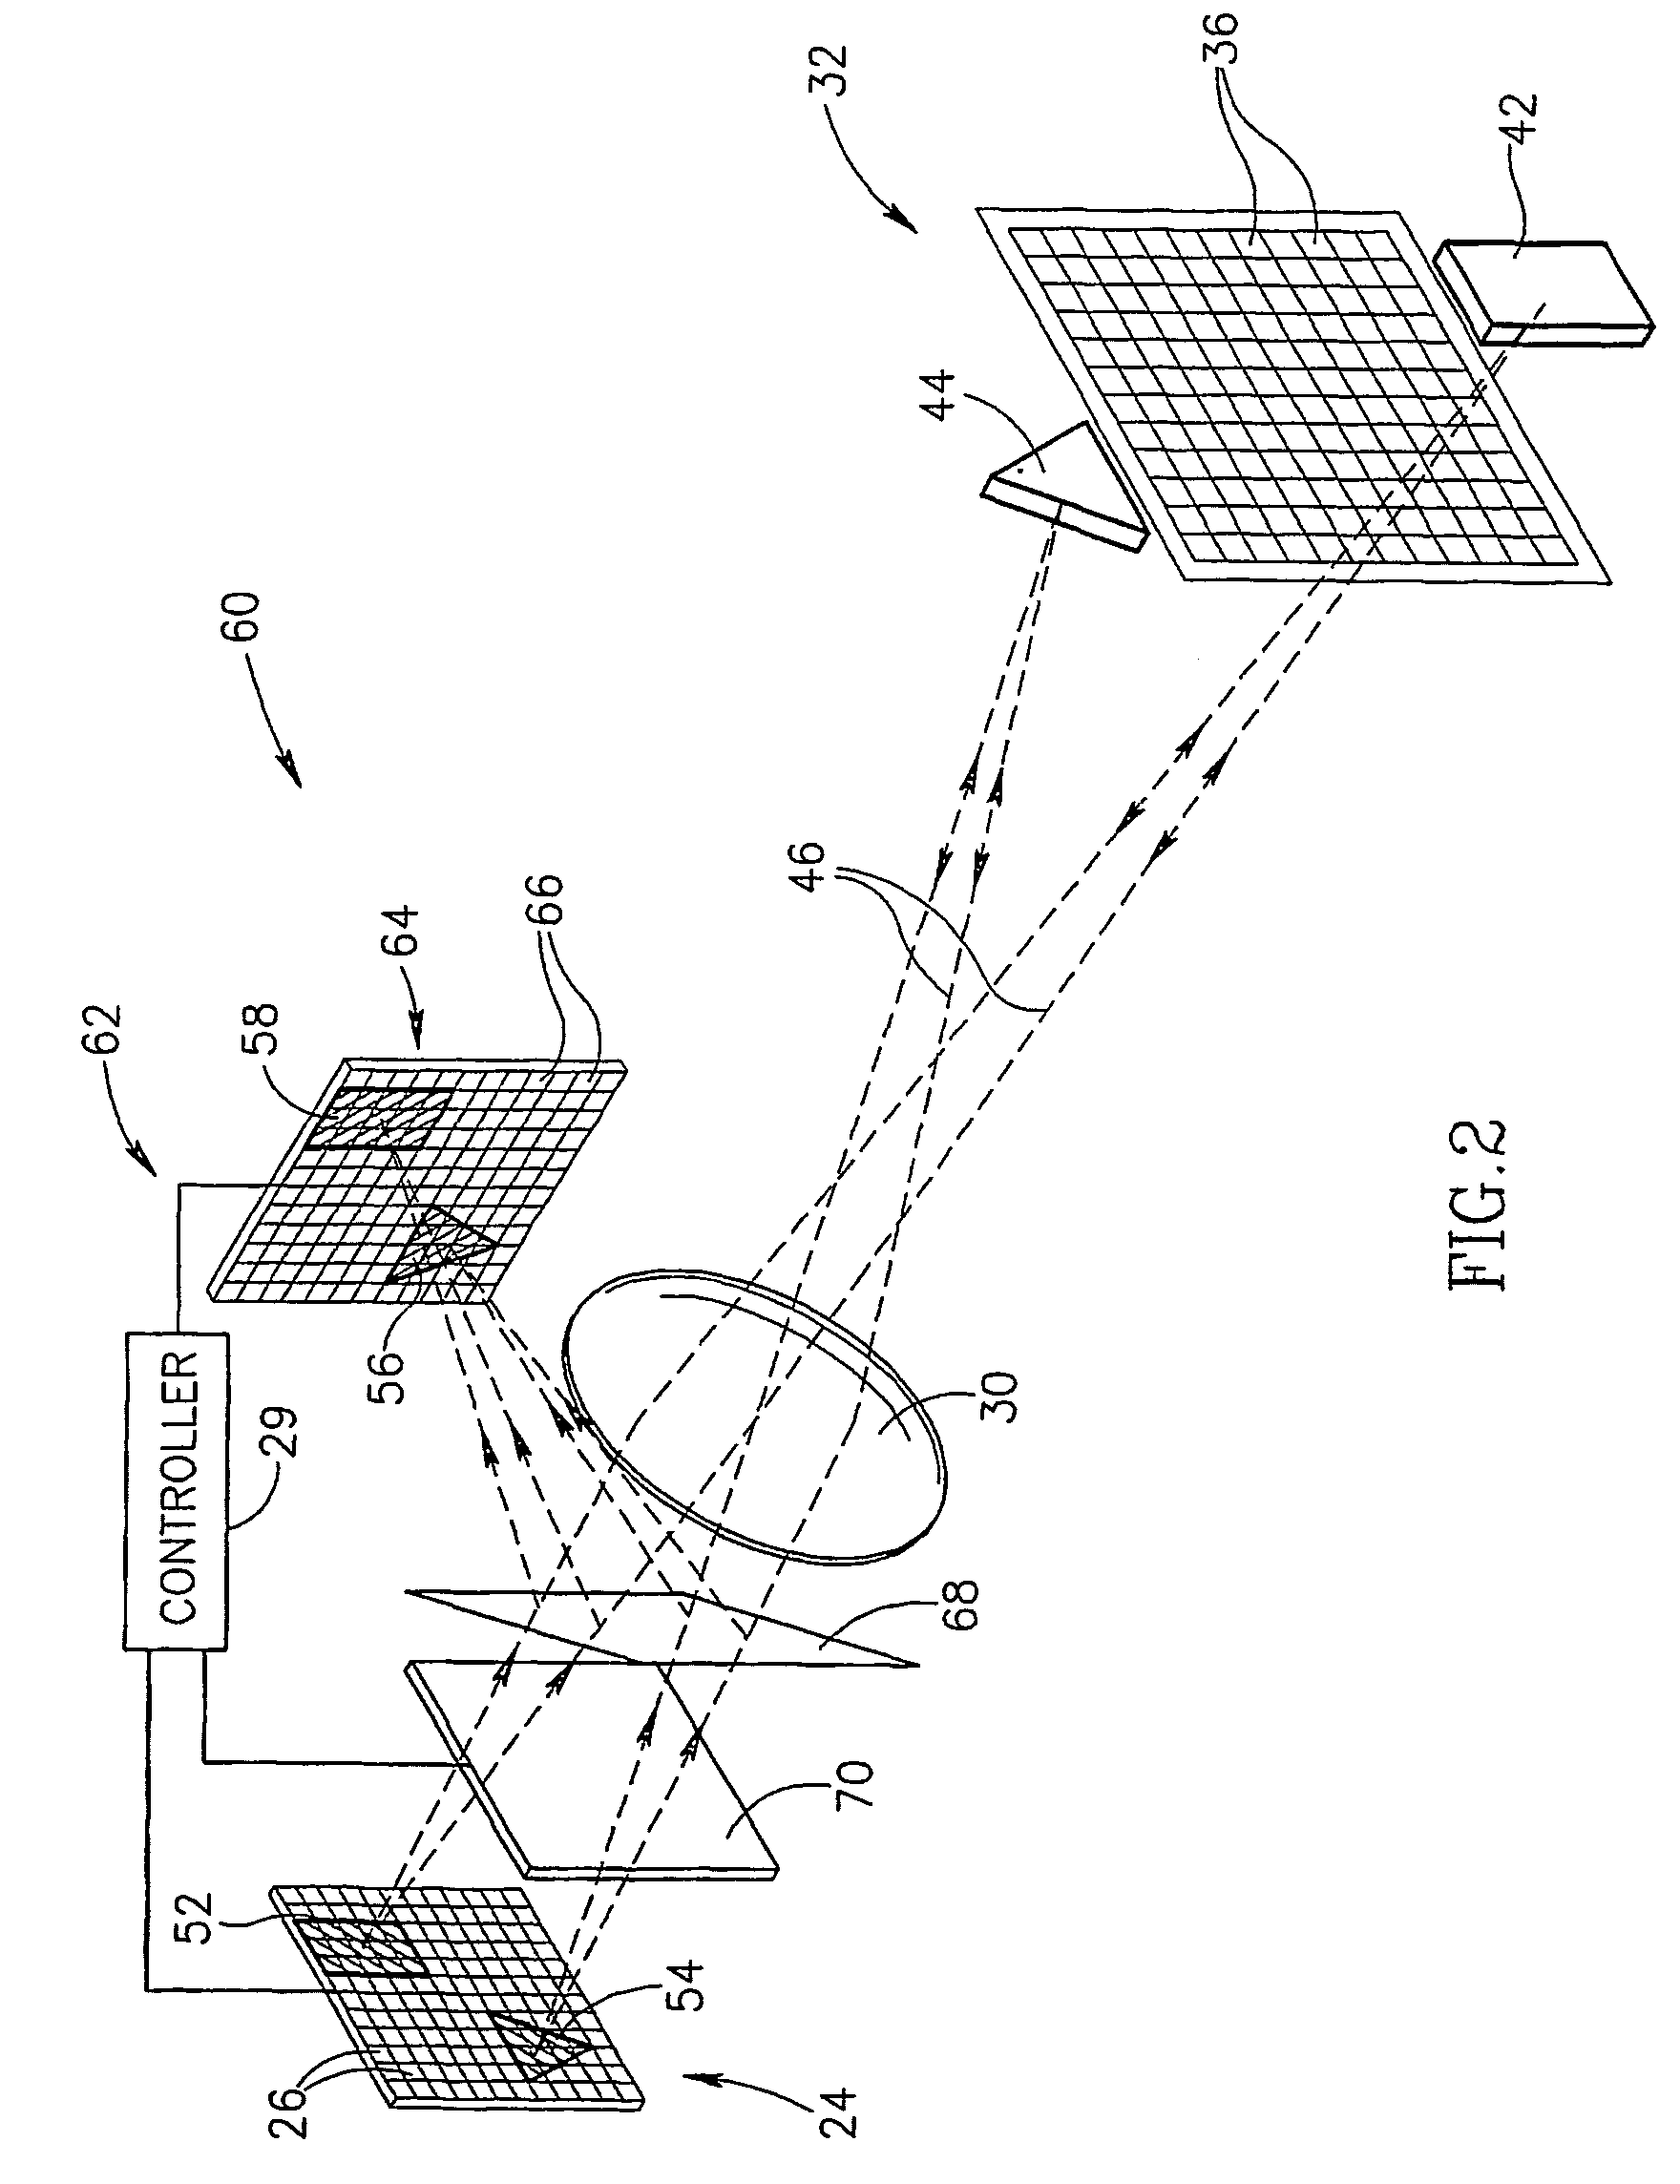 Method and apparatus for providing adaptive illumination